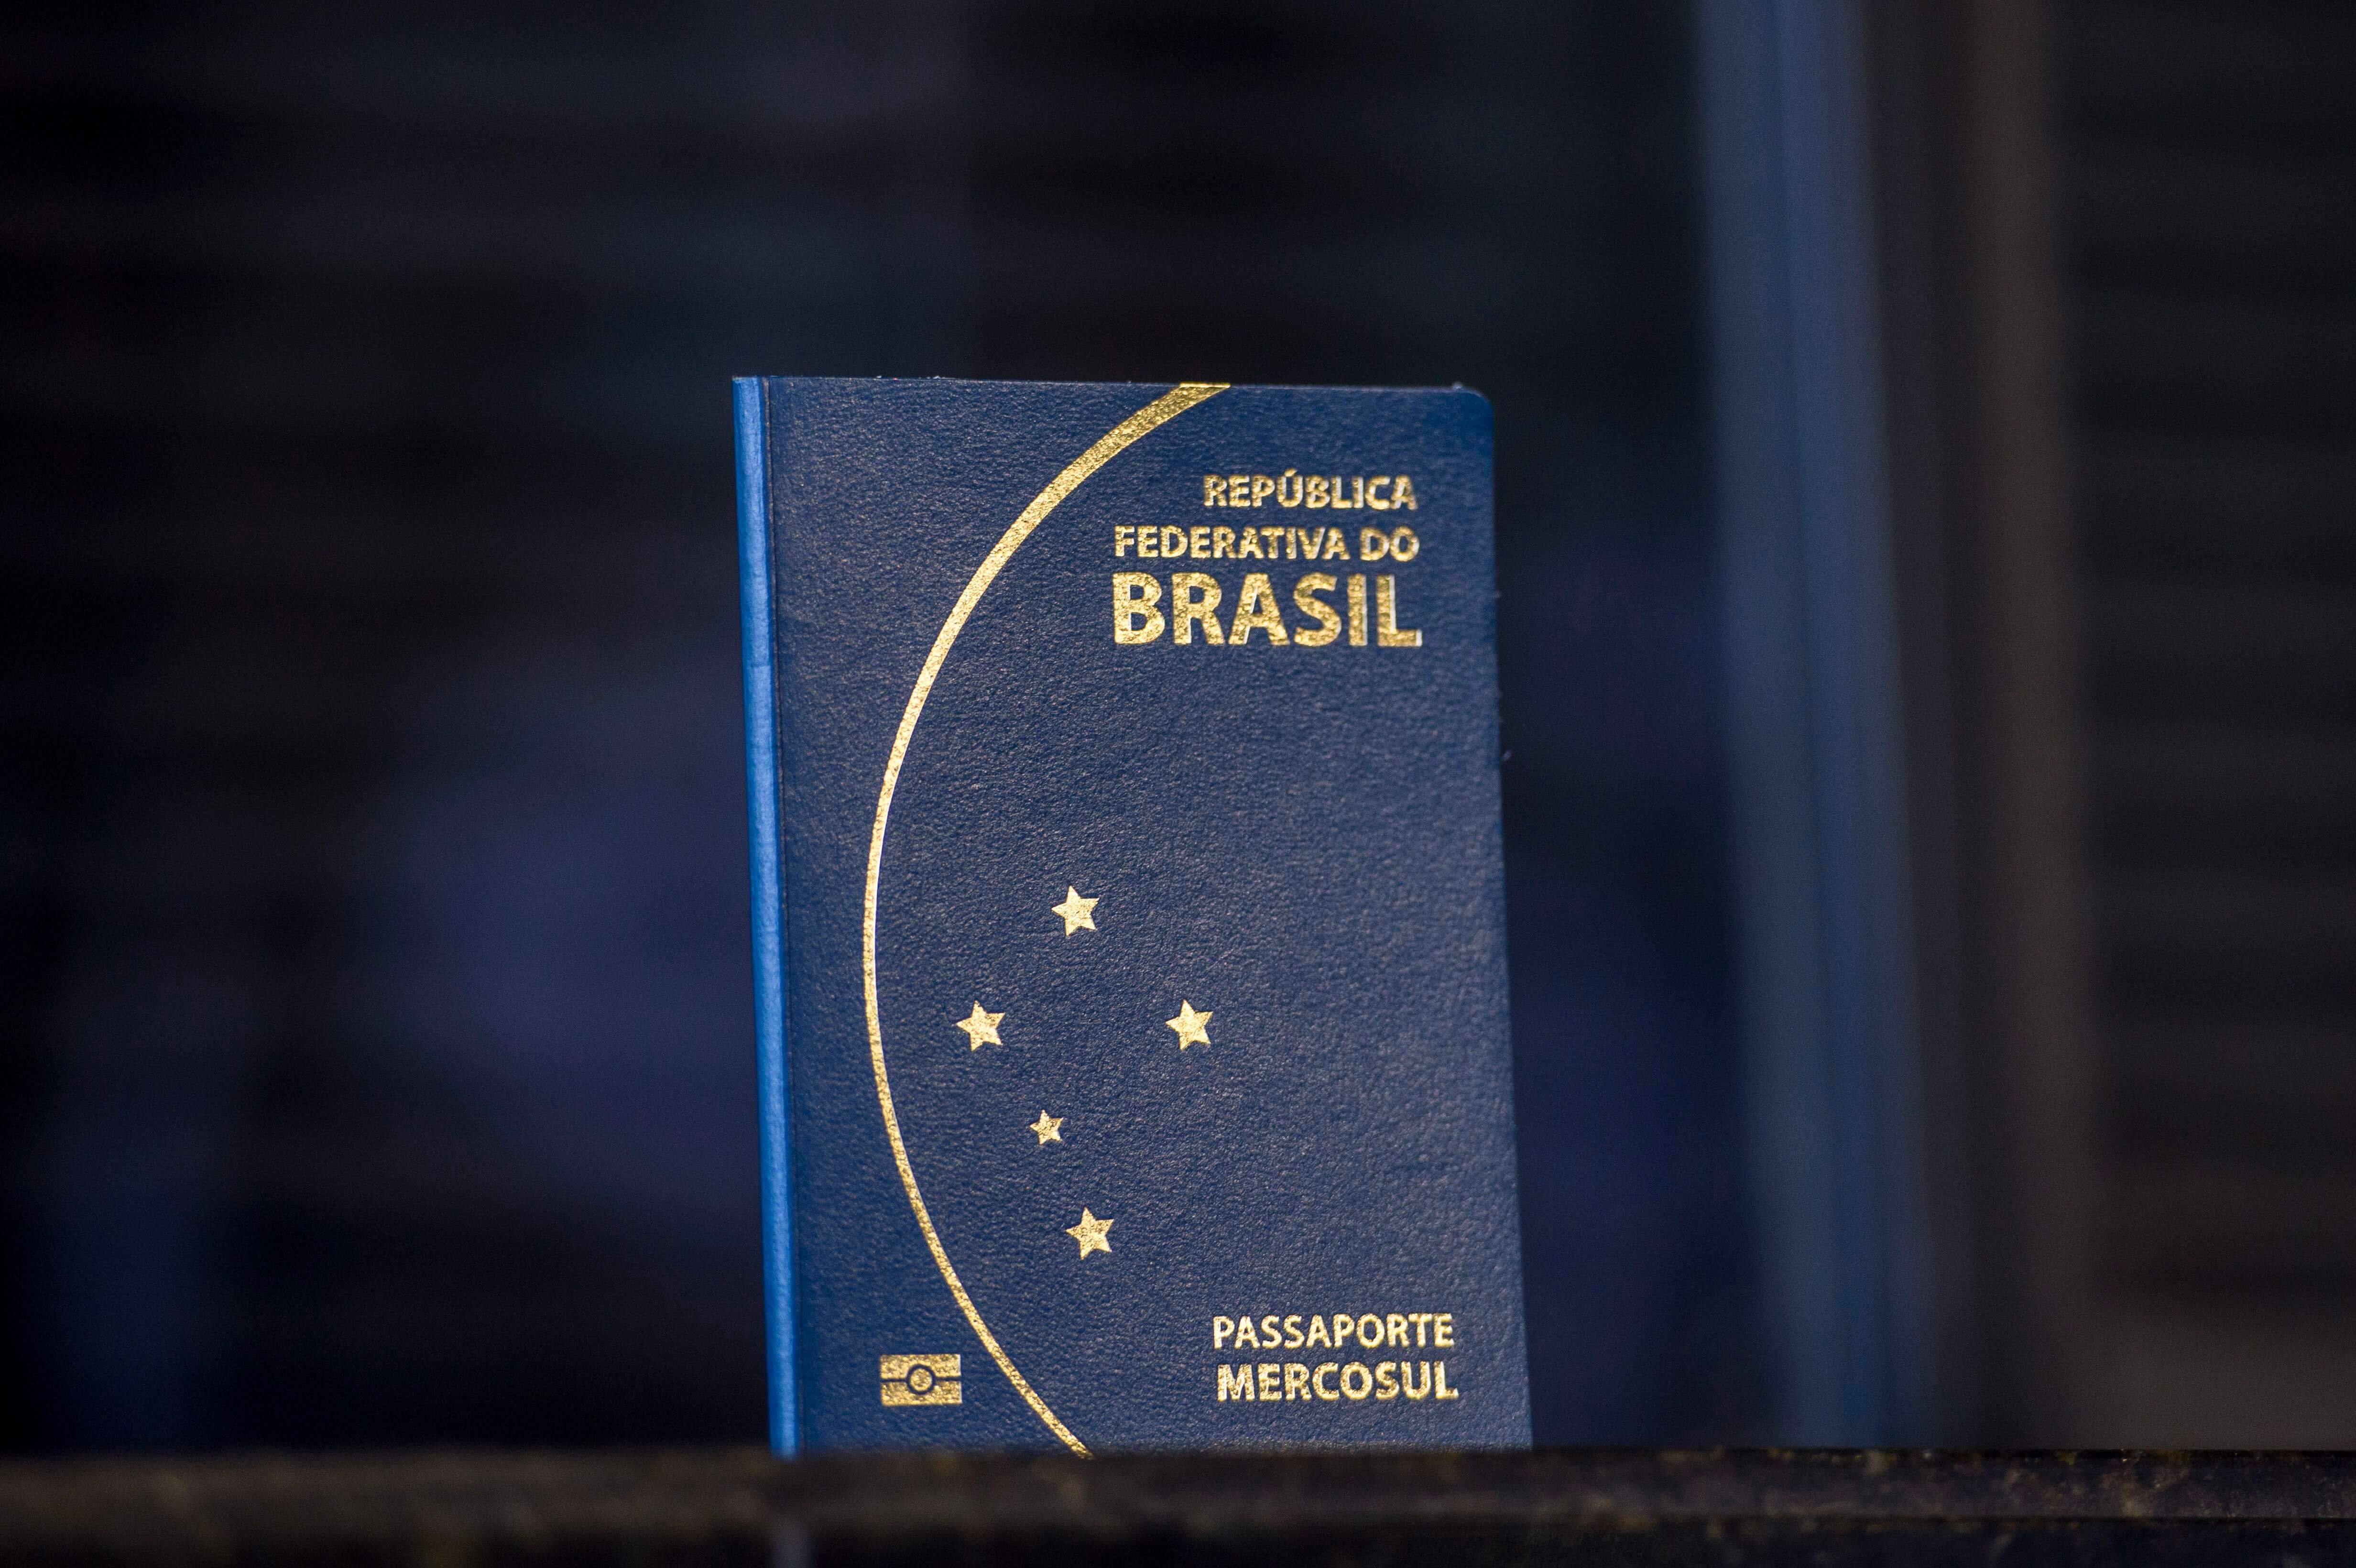 Passaporte brasileiro 2015 Viagem: 5 países que não precisam de visto